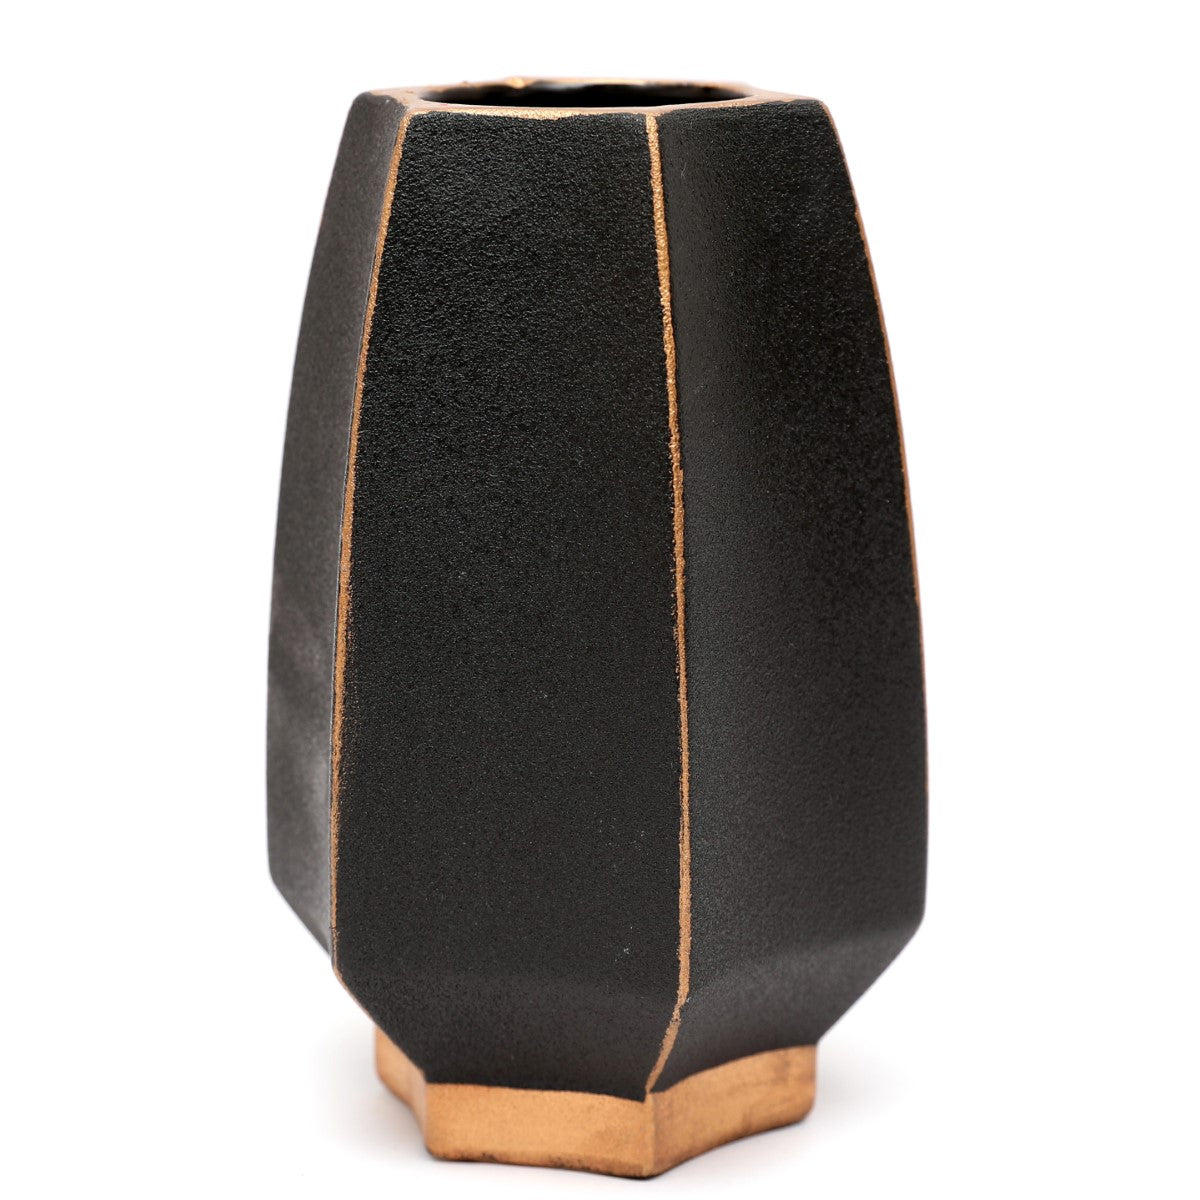 Ceramic Vase.HM-4117 ZA-57